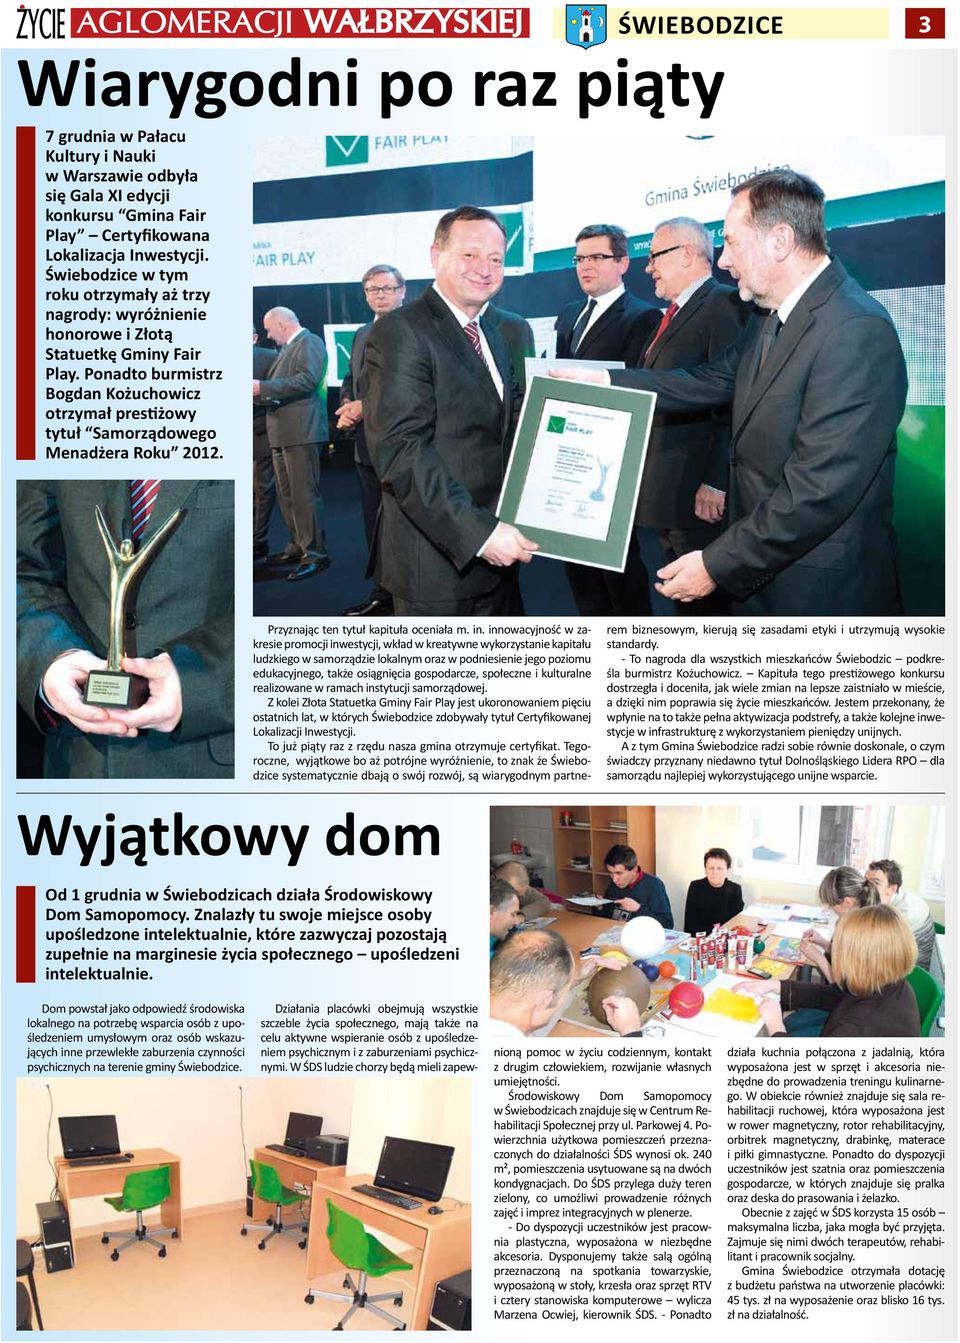 Ponadto burmistrz Bogdan Kożuchowicz otrzymał prestiżowy tytuł Samorządowego Menadżera Roku 2012. Przyznając ten tytuł kapituła oceniała m. in.